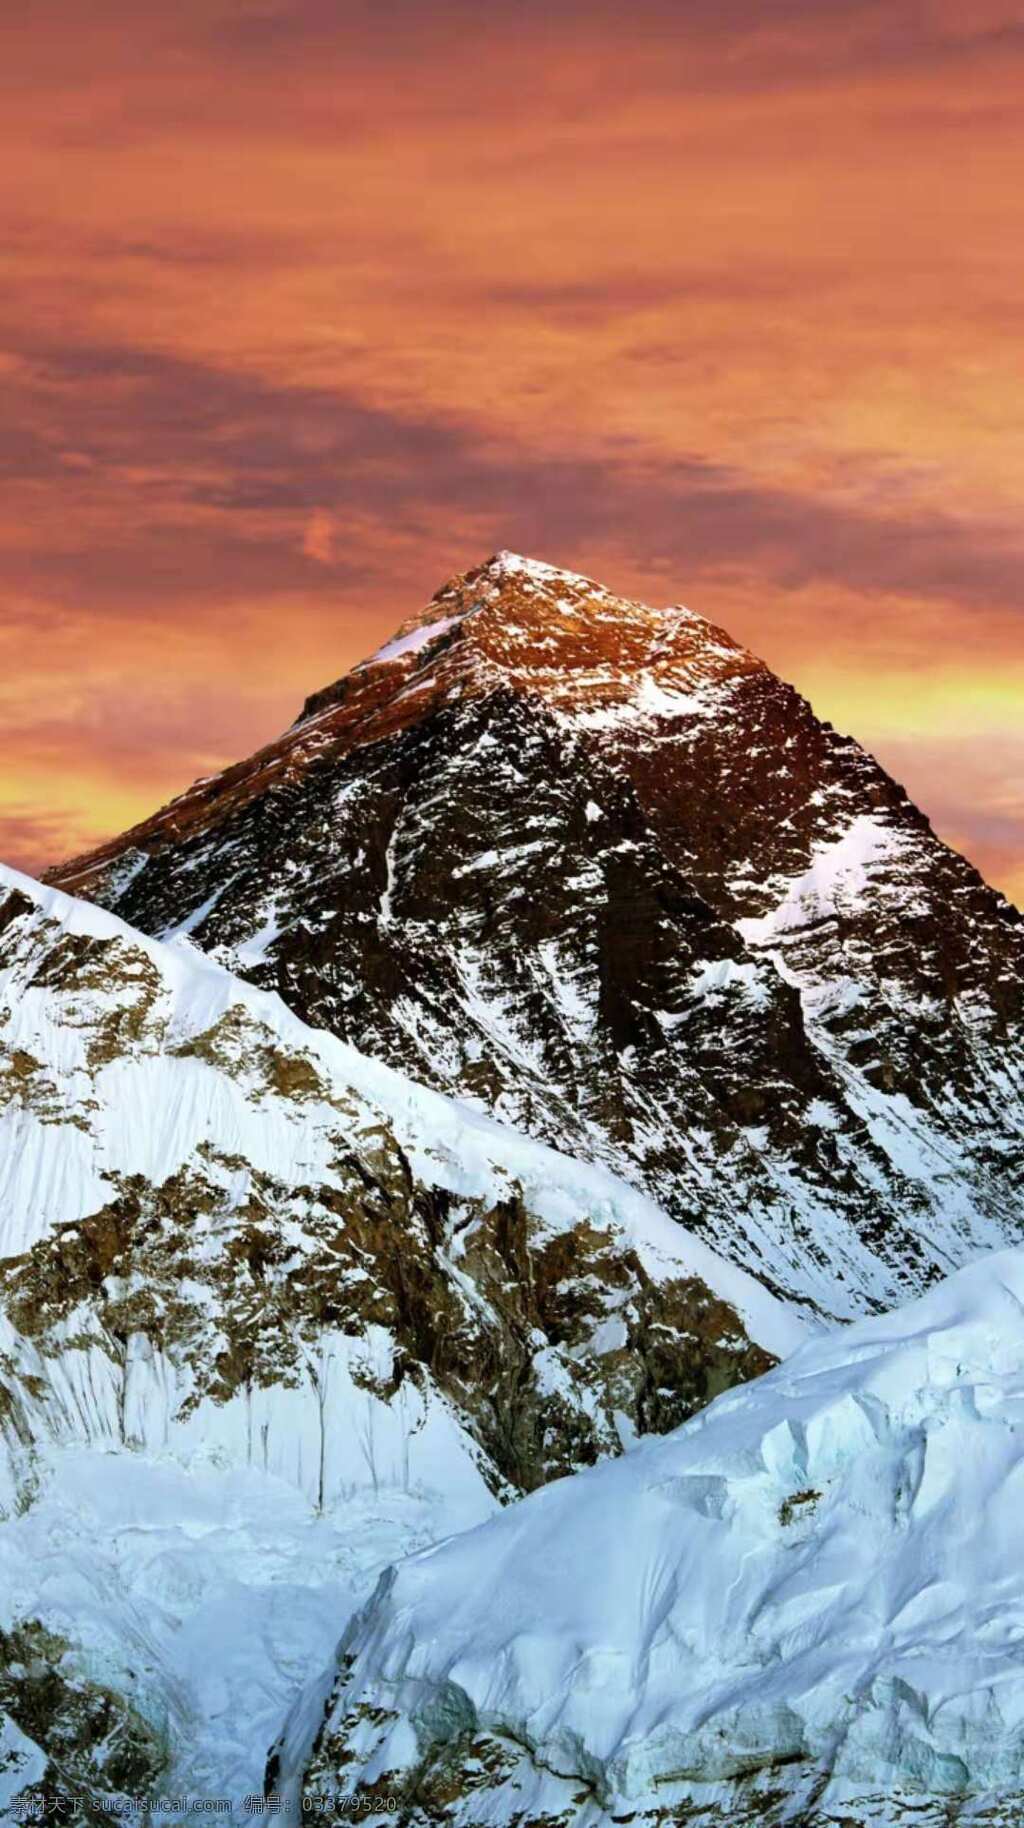 世界 海拔 最高 山峰 图 珠穆朗玛峰 中国的山峰 全球第一高峰 致命尖峰 山峰旅游 自然景观 自然风景